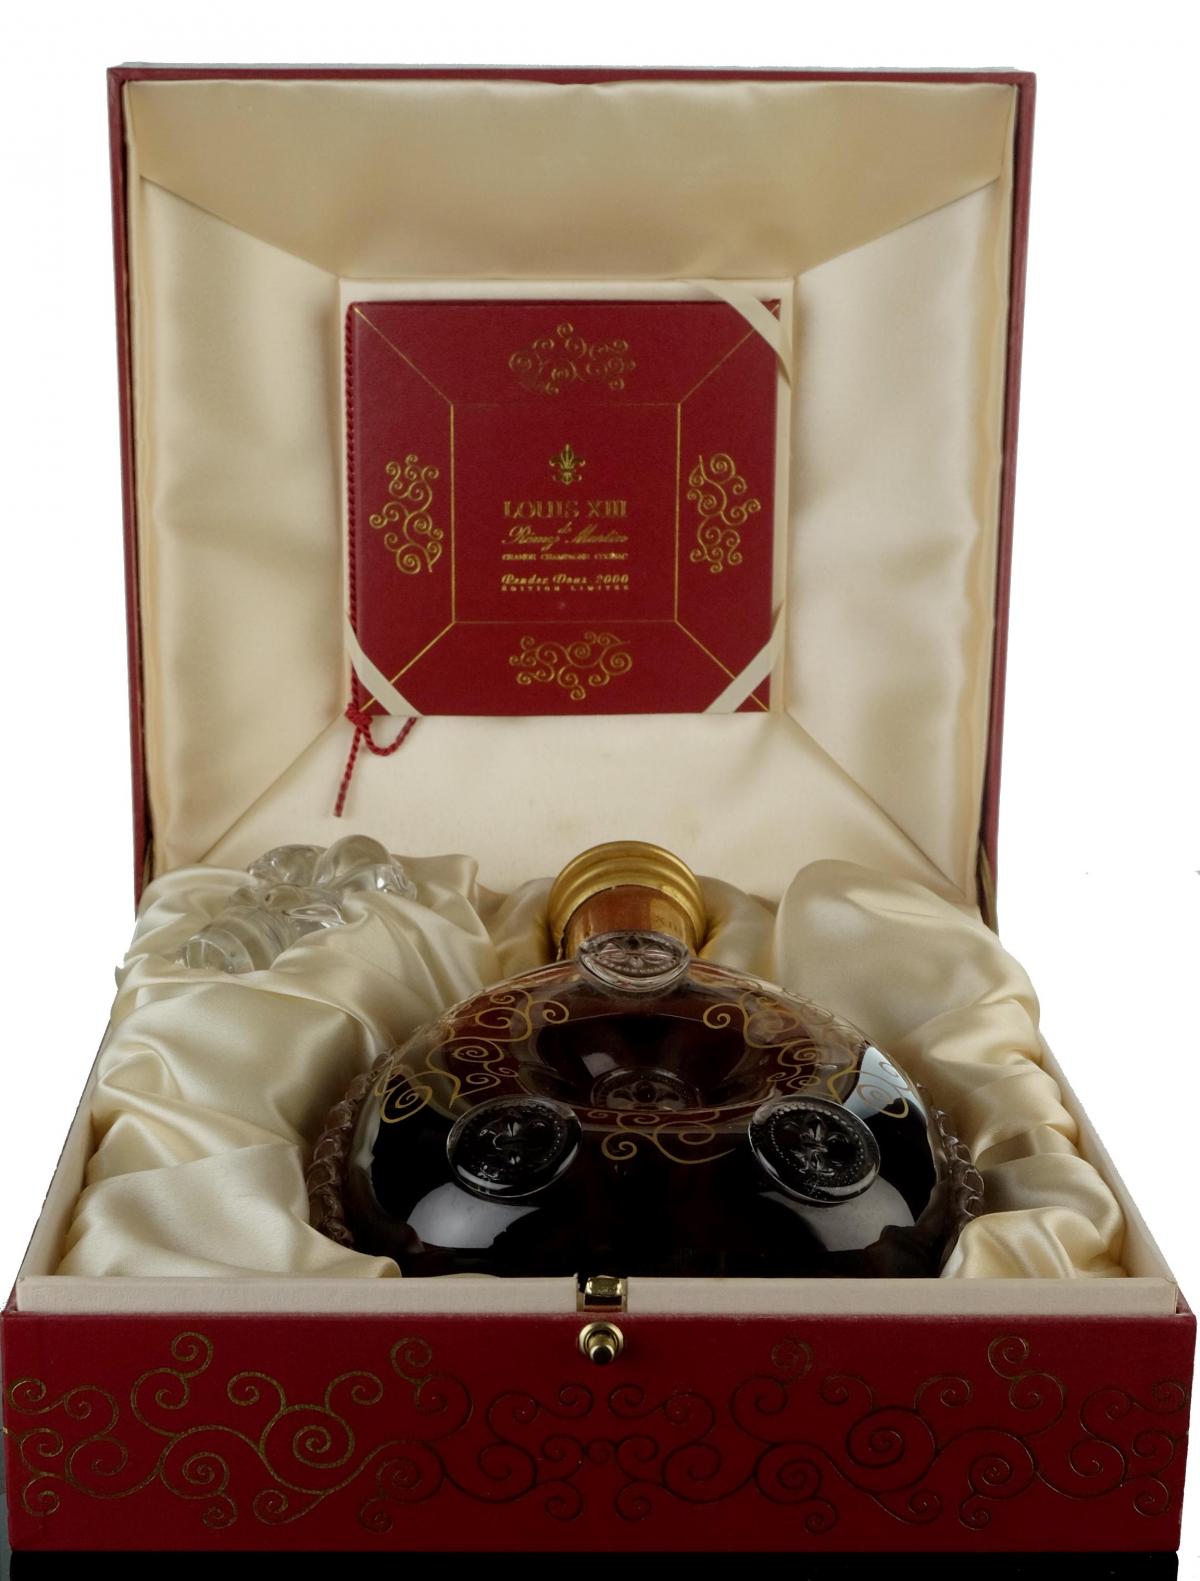 Remy Martin Louis XIII Cognac Rendez Vous 2000 Edition